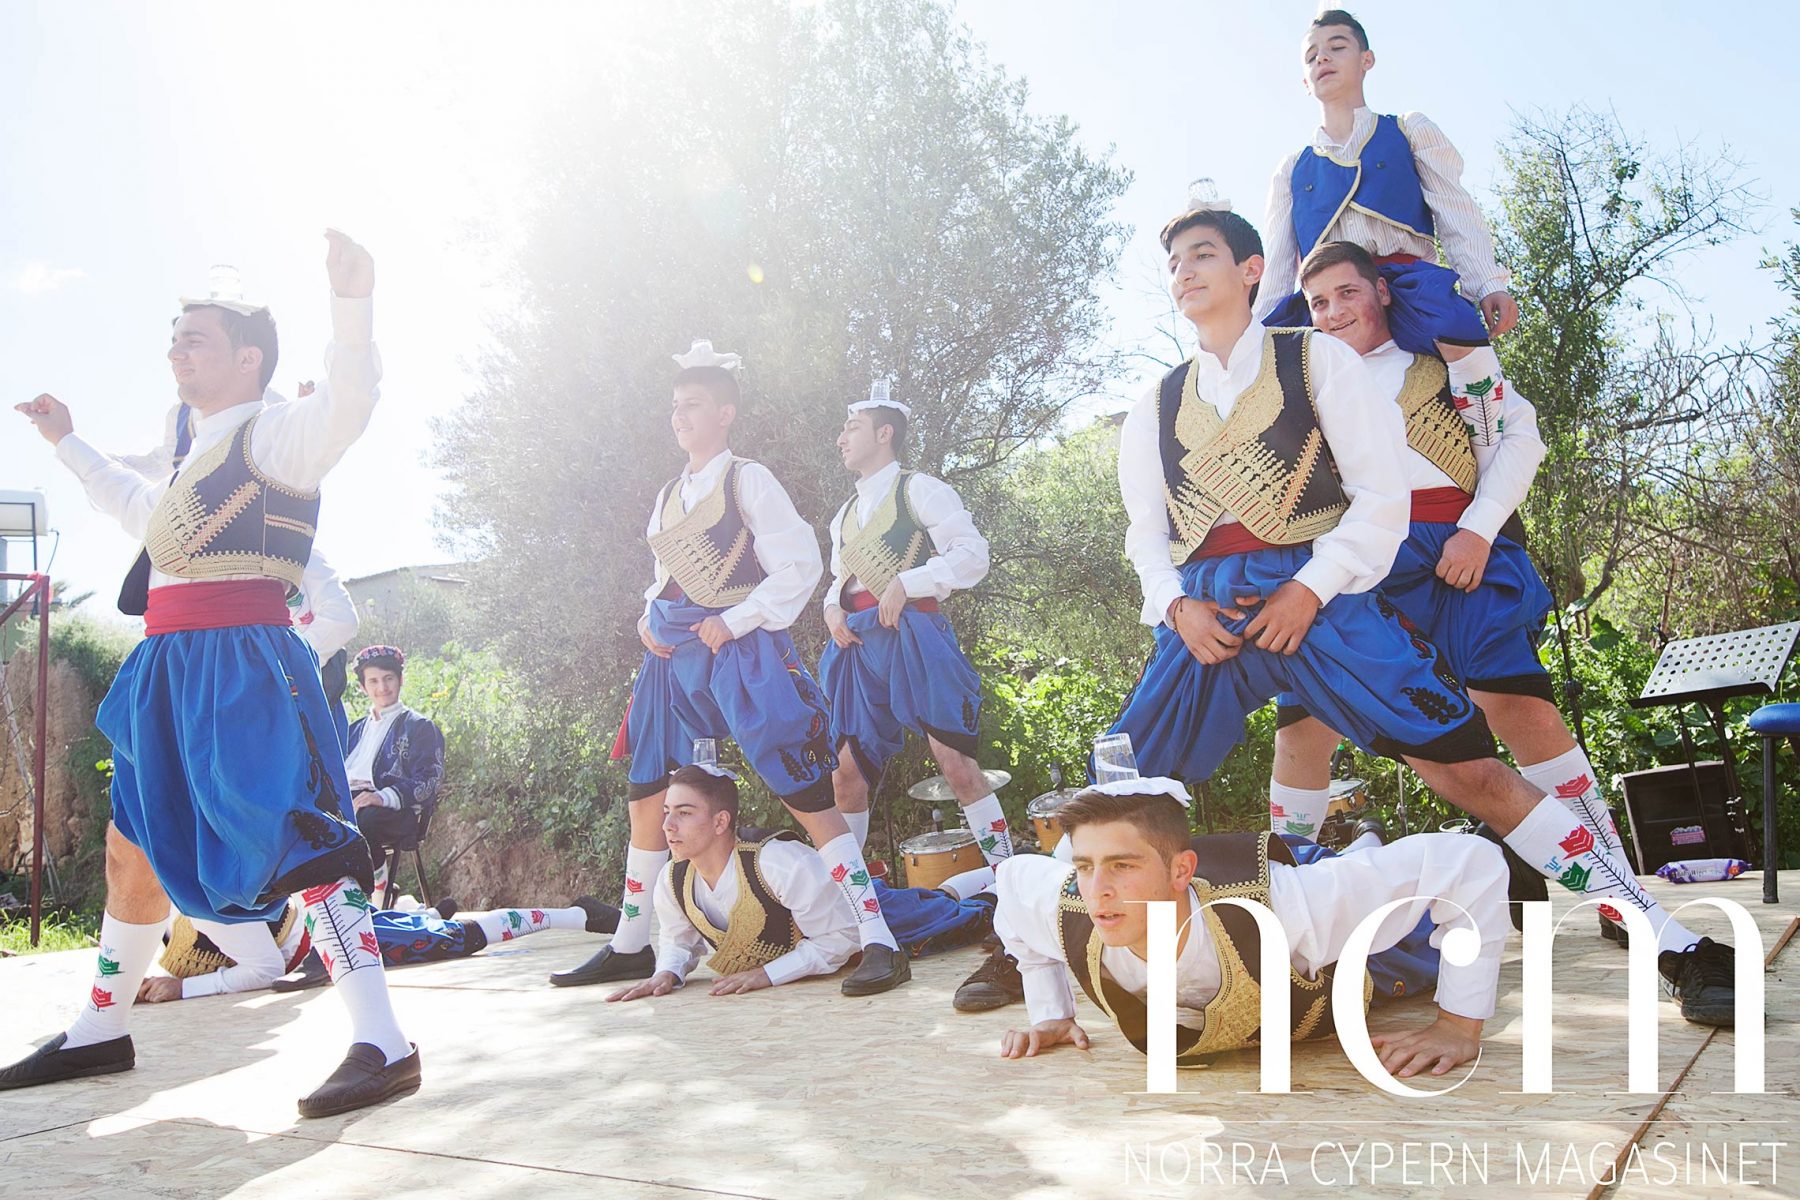 Folkdans vid ekomarknaden på Norra Cypern